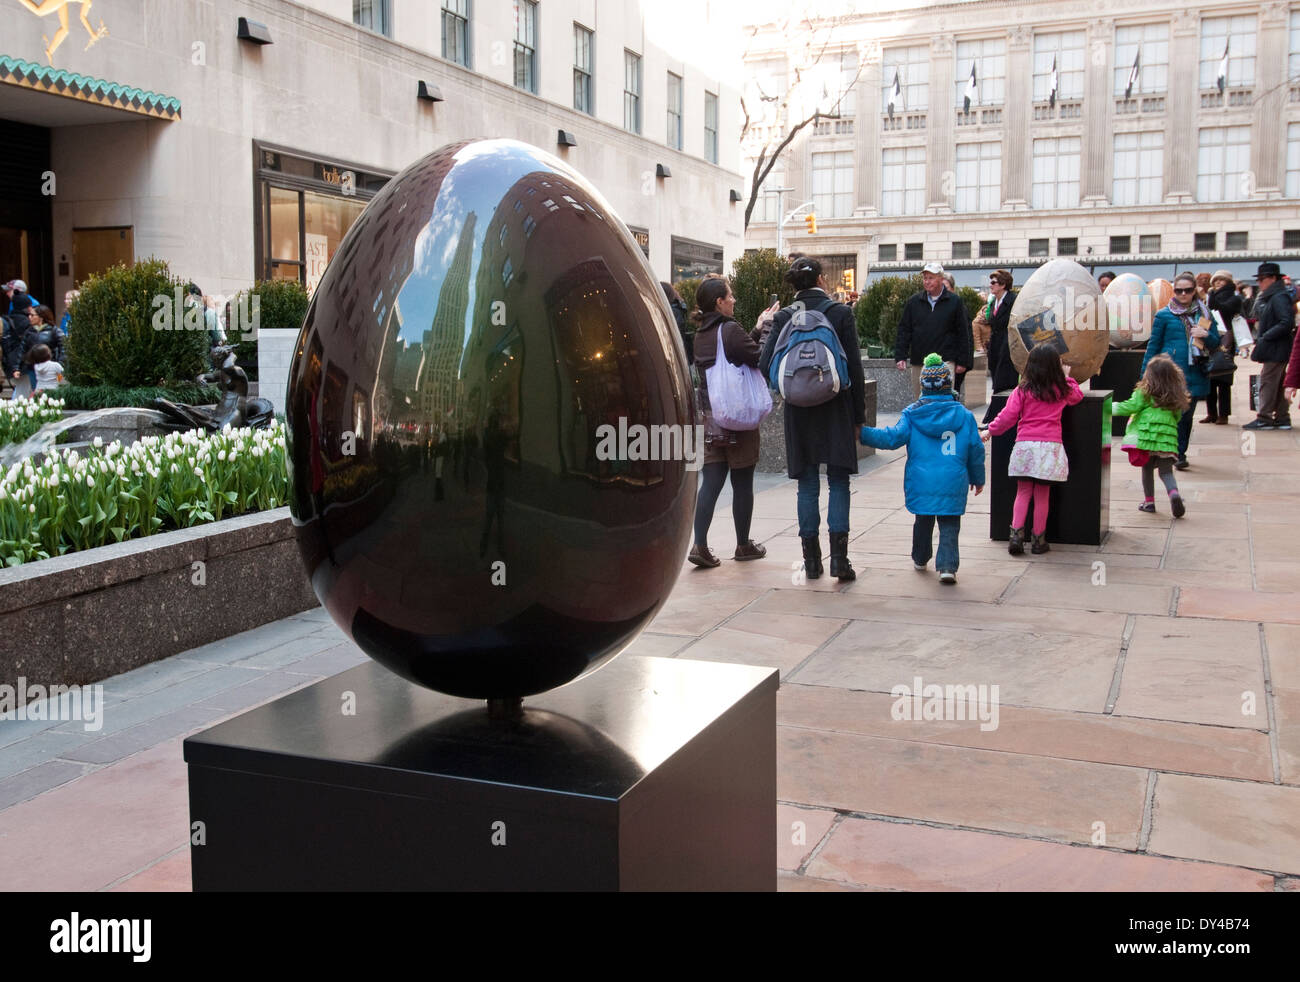 New York, NY - 5 April 1214: A Faberge-Ei, geschaffen vom Künstler Eric Cahan, erscheint am Rockefeller Center als Teil der Faberge große Eiersuche während 1-17. April (Ei #79). Dieses Ei ist eine von rund 275 von berühmten Designern erstellt und angezeigt in New York City. Die Öffentlichkeit wird aufgefordert, die Eizellen mit einer Smartphone-app für eine Chance zu gewinnen suchen. Erlös aus dem Verkauf der Eier und andere Merchandise für wohltätige Zwecke. Stockfoto